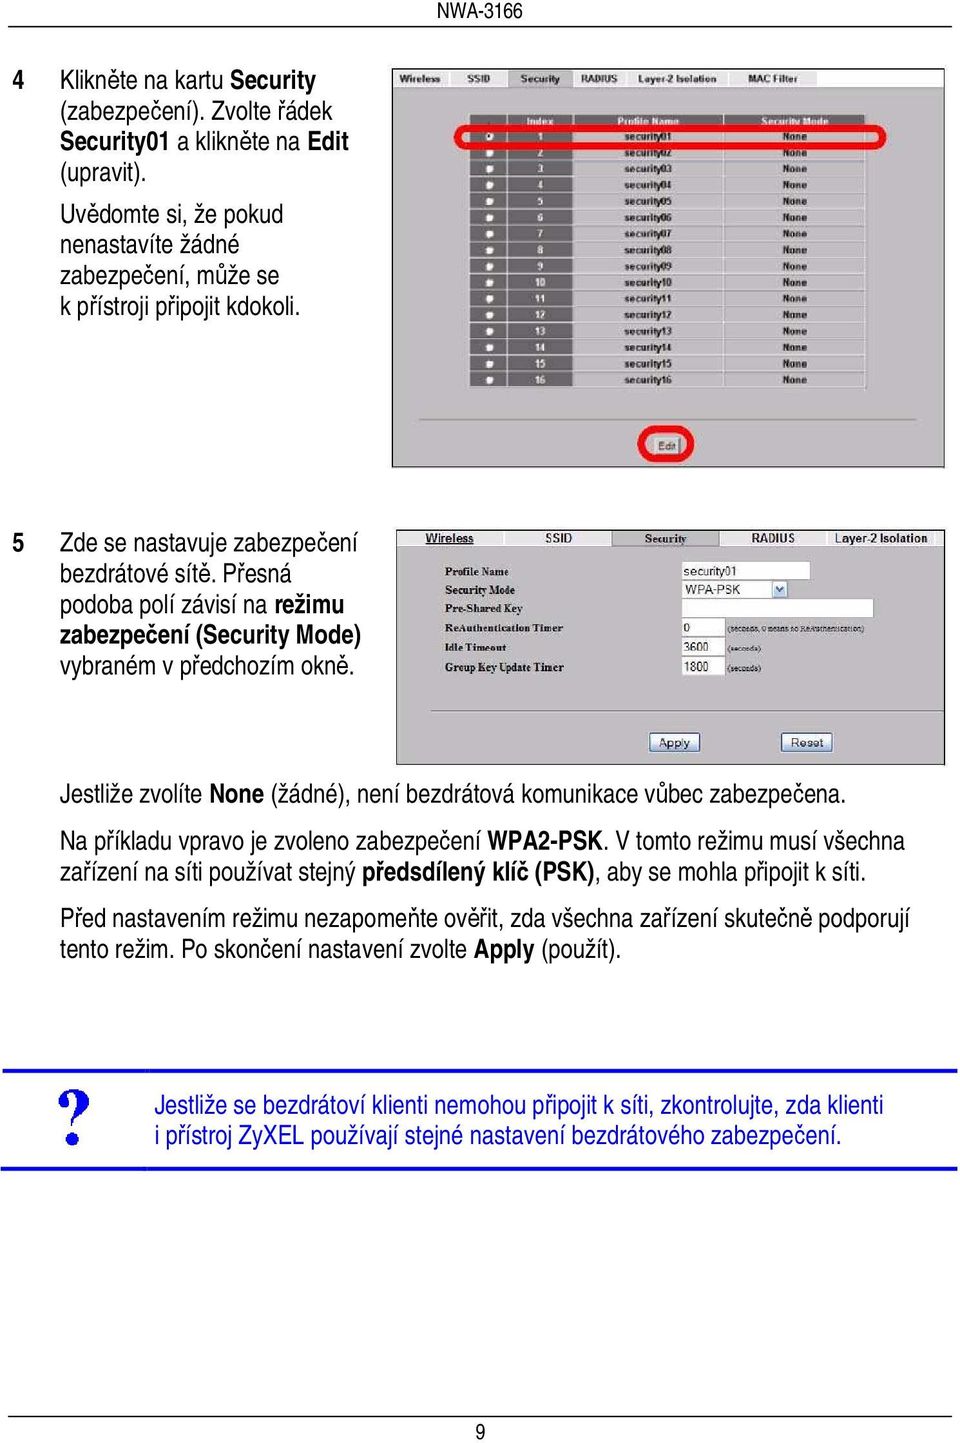 Jestliže zvolíte None (žádné), není bezdrátová komunikace vůbec zabezpečena. Na příkladu vpravo je zvoleno zabezpečení WPA2-PSK.